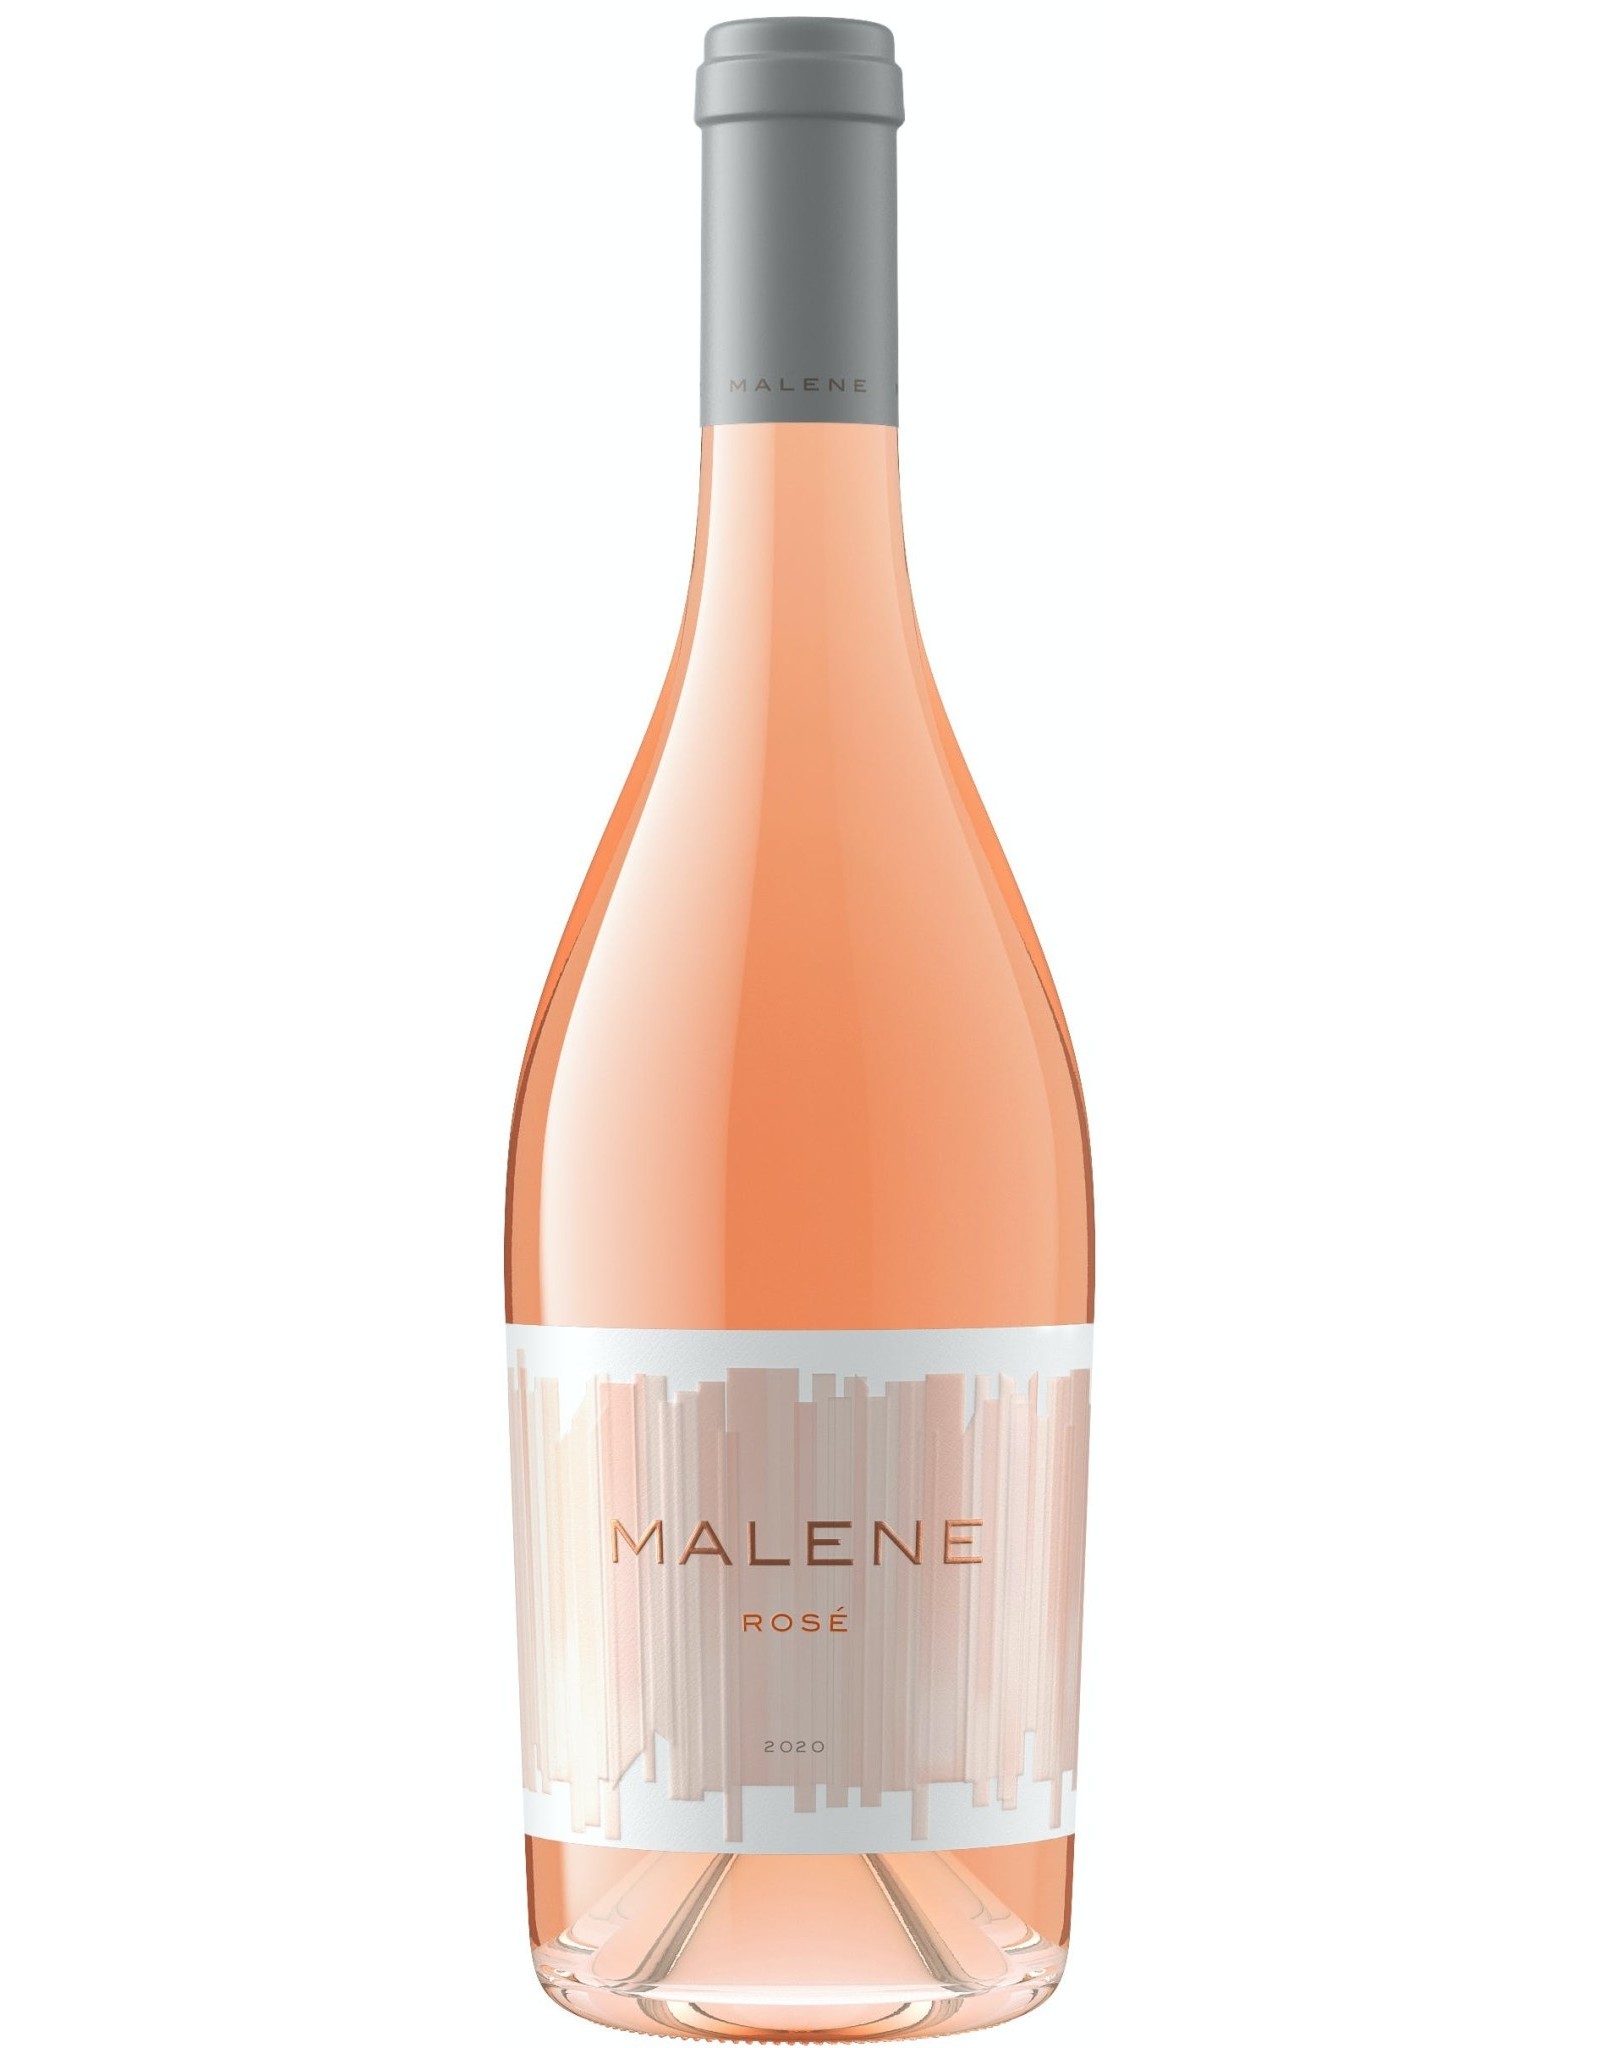 Malene Rose 2020